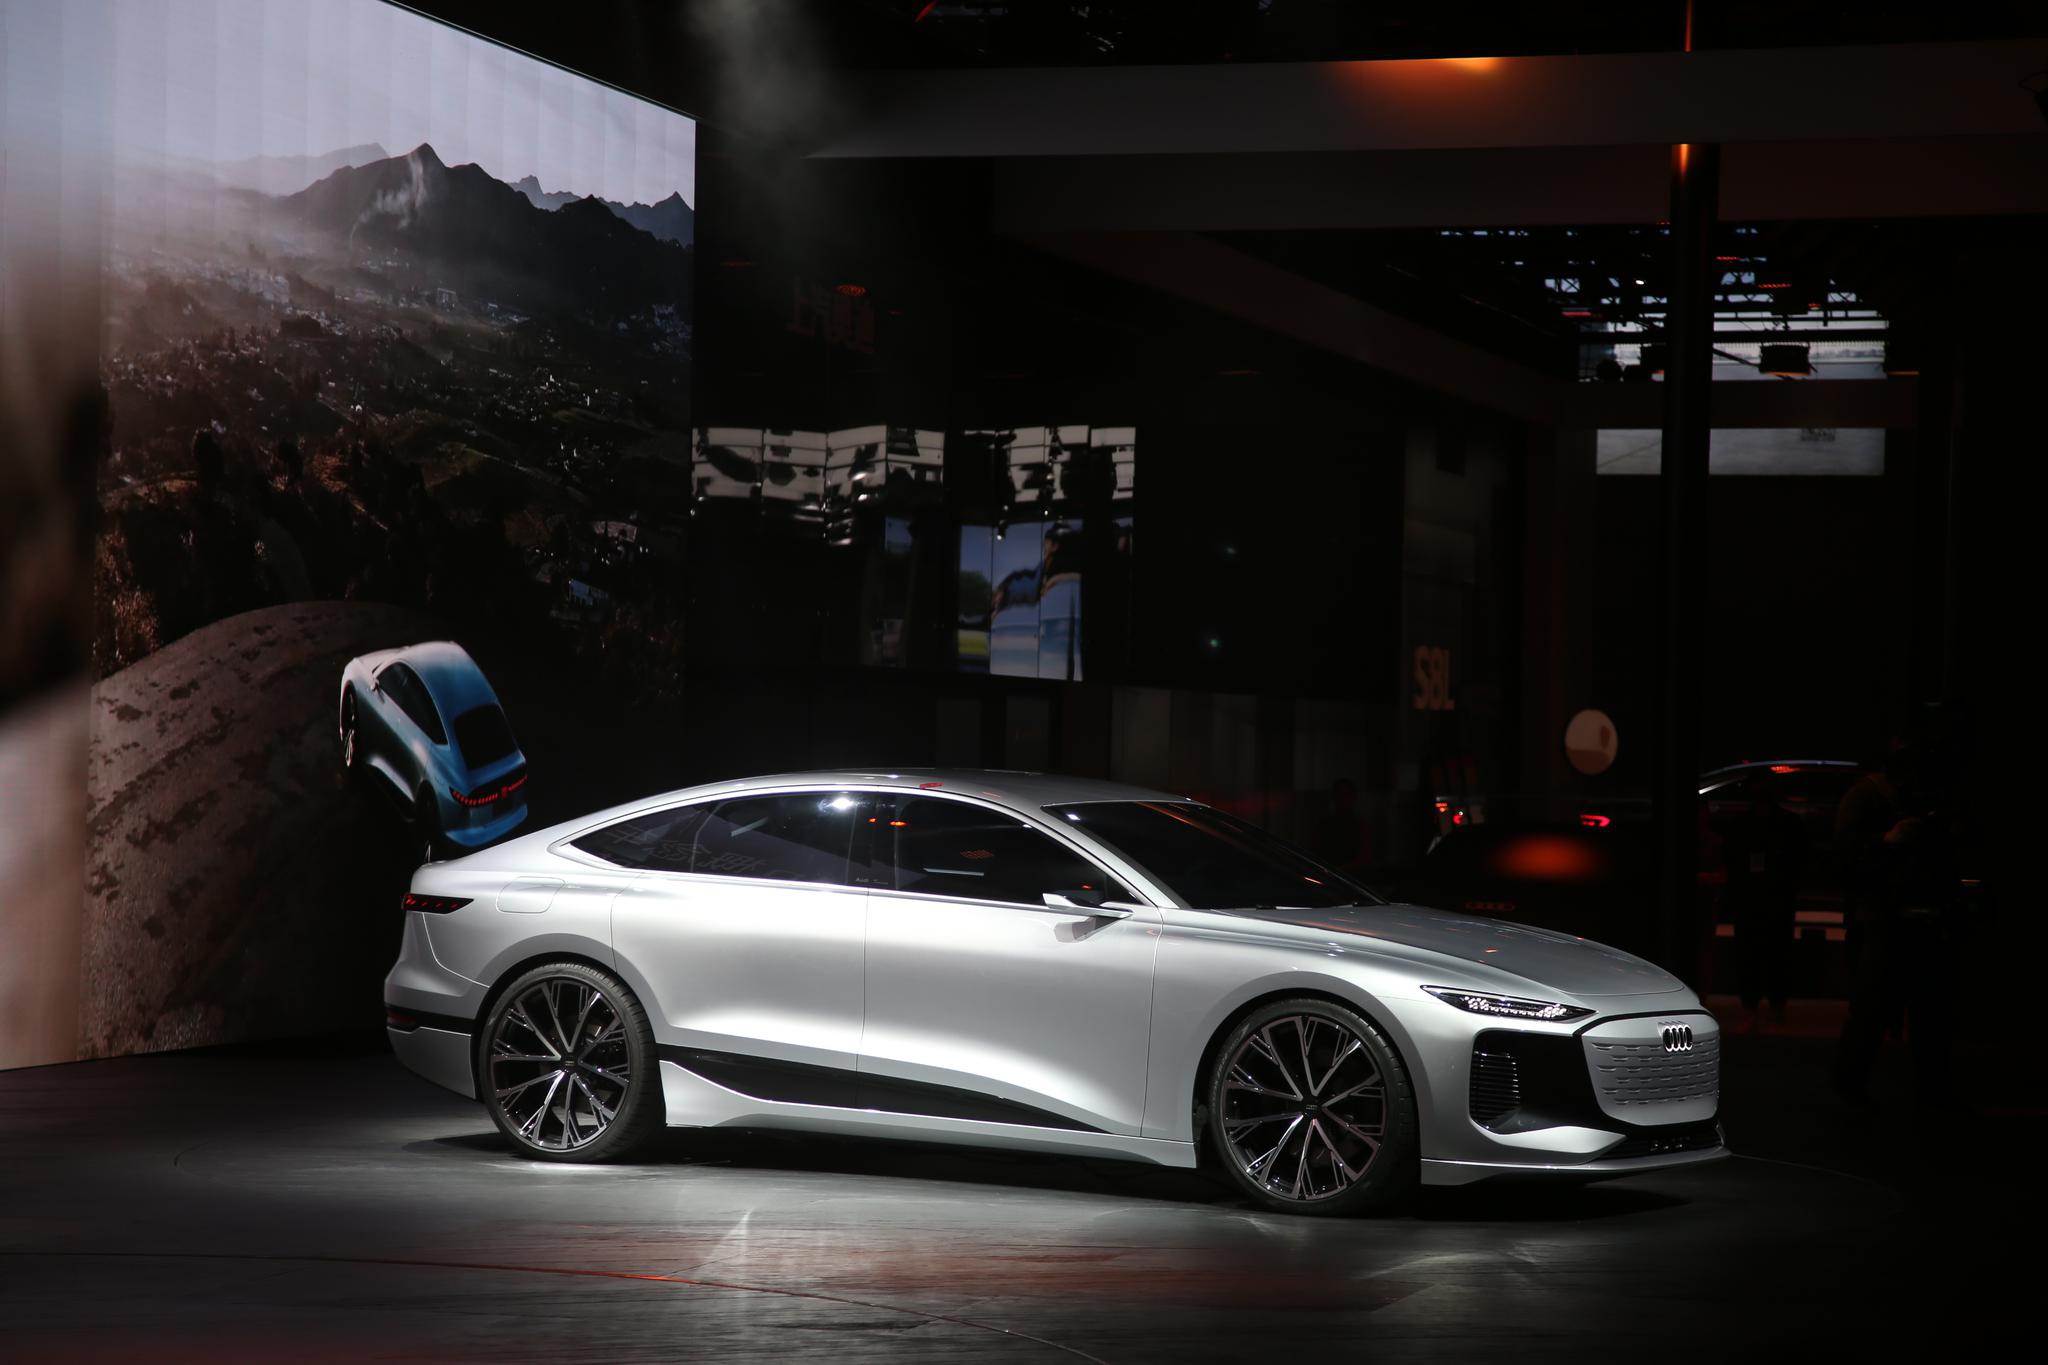 2021上海车展：奥迪A6 e-tron概念车全球首发